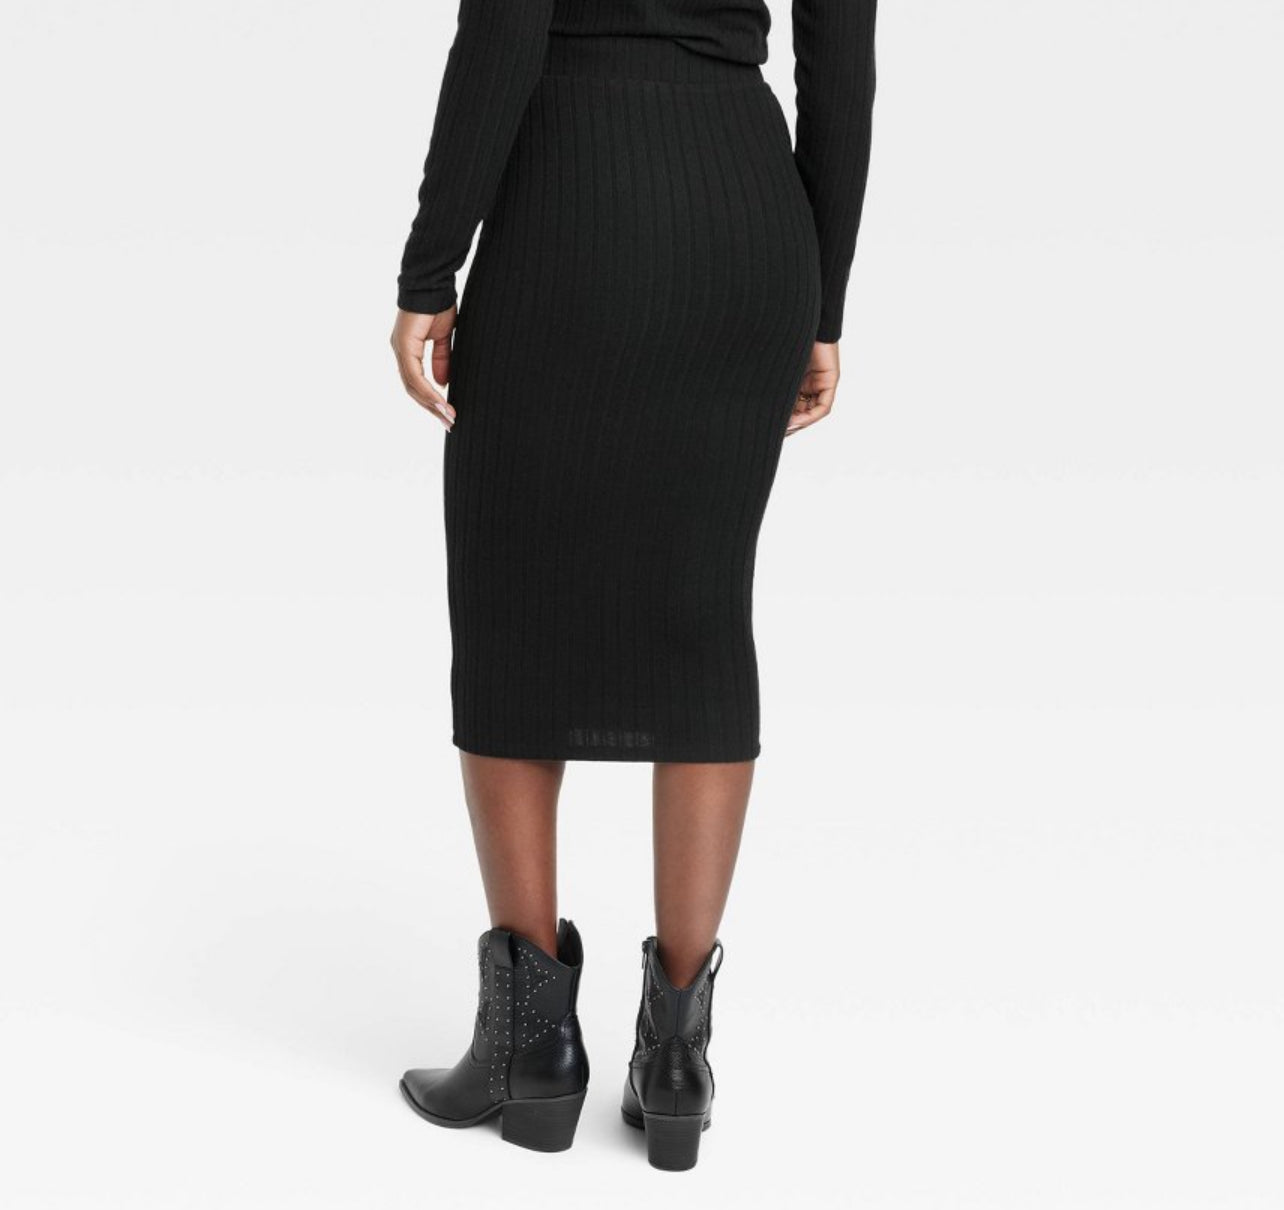 Women's Black Knit Pencil Midi Skirt - Universal Thread